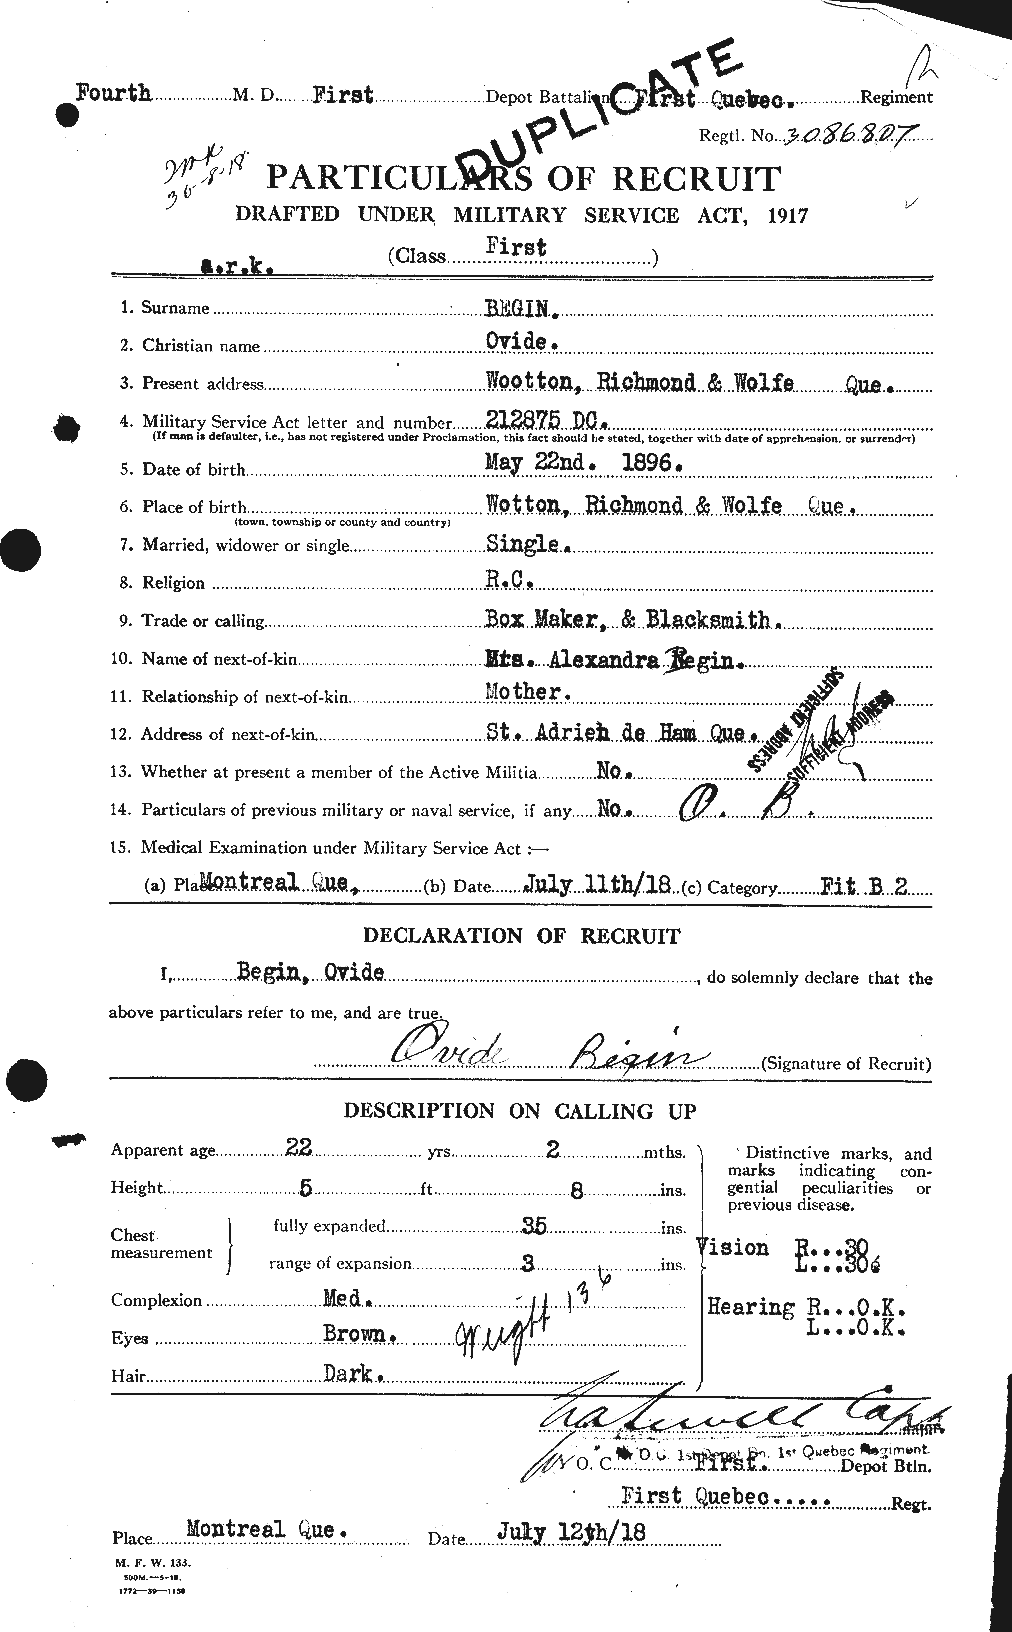 Dossiers du Personnel de la Première Guerre mondiale - CEC 232400a